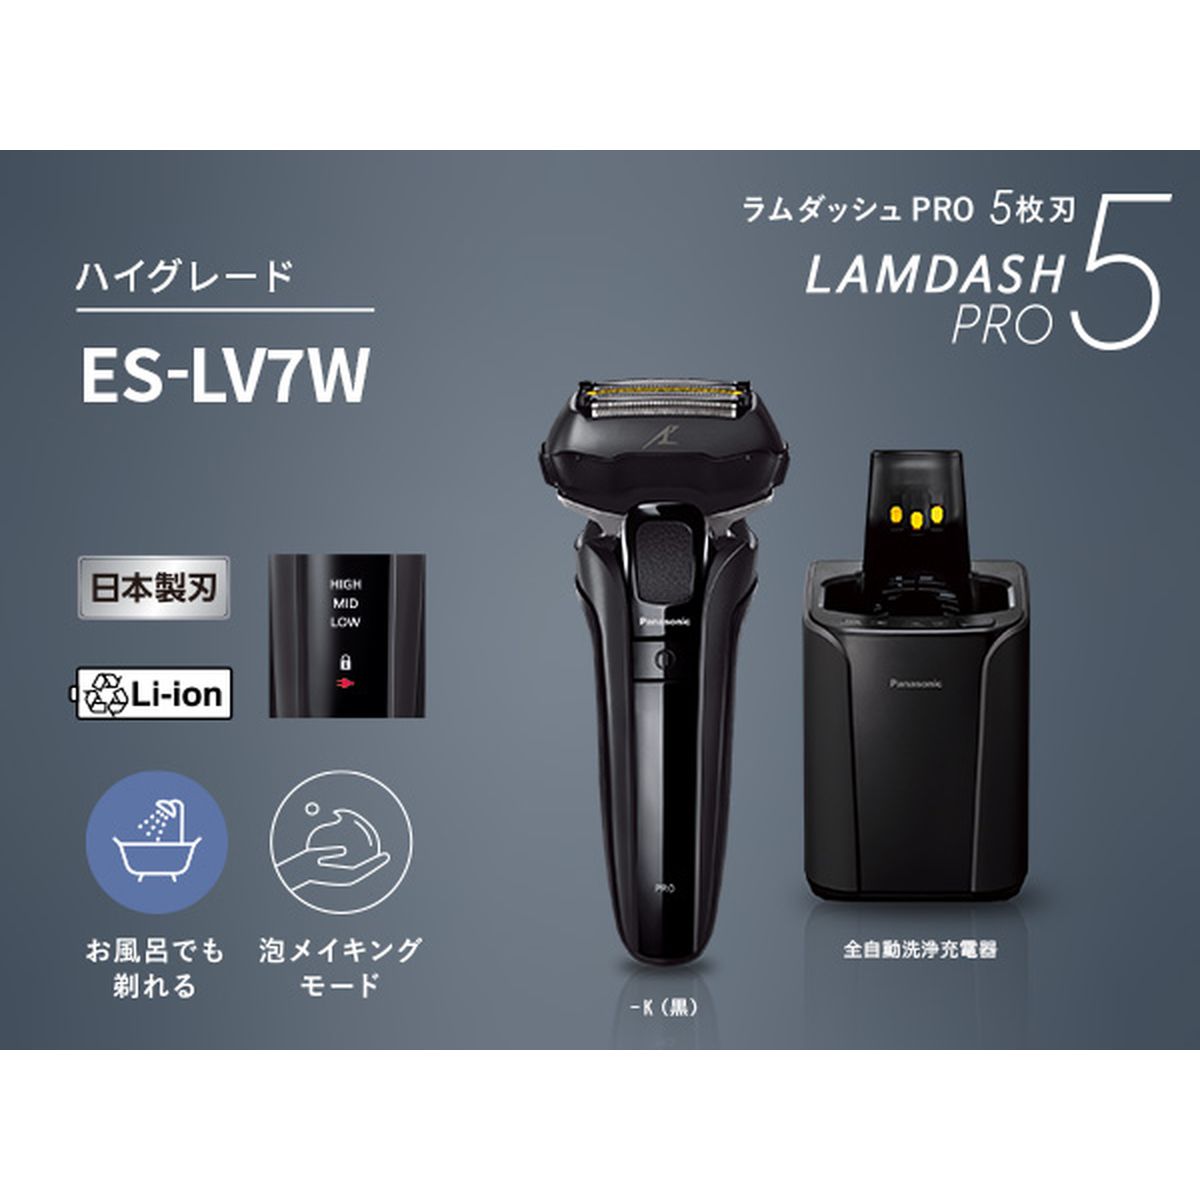 【新品・未開封品】パナソニック ラムダッシュPRO 5枚刃 ES-LV7W-K